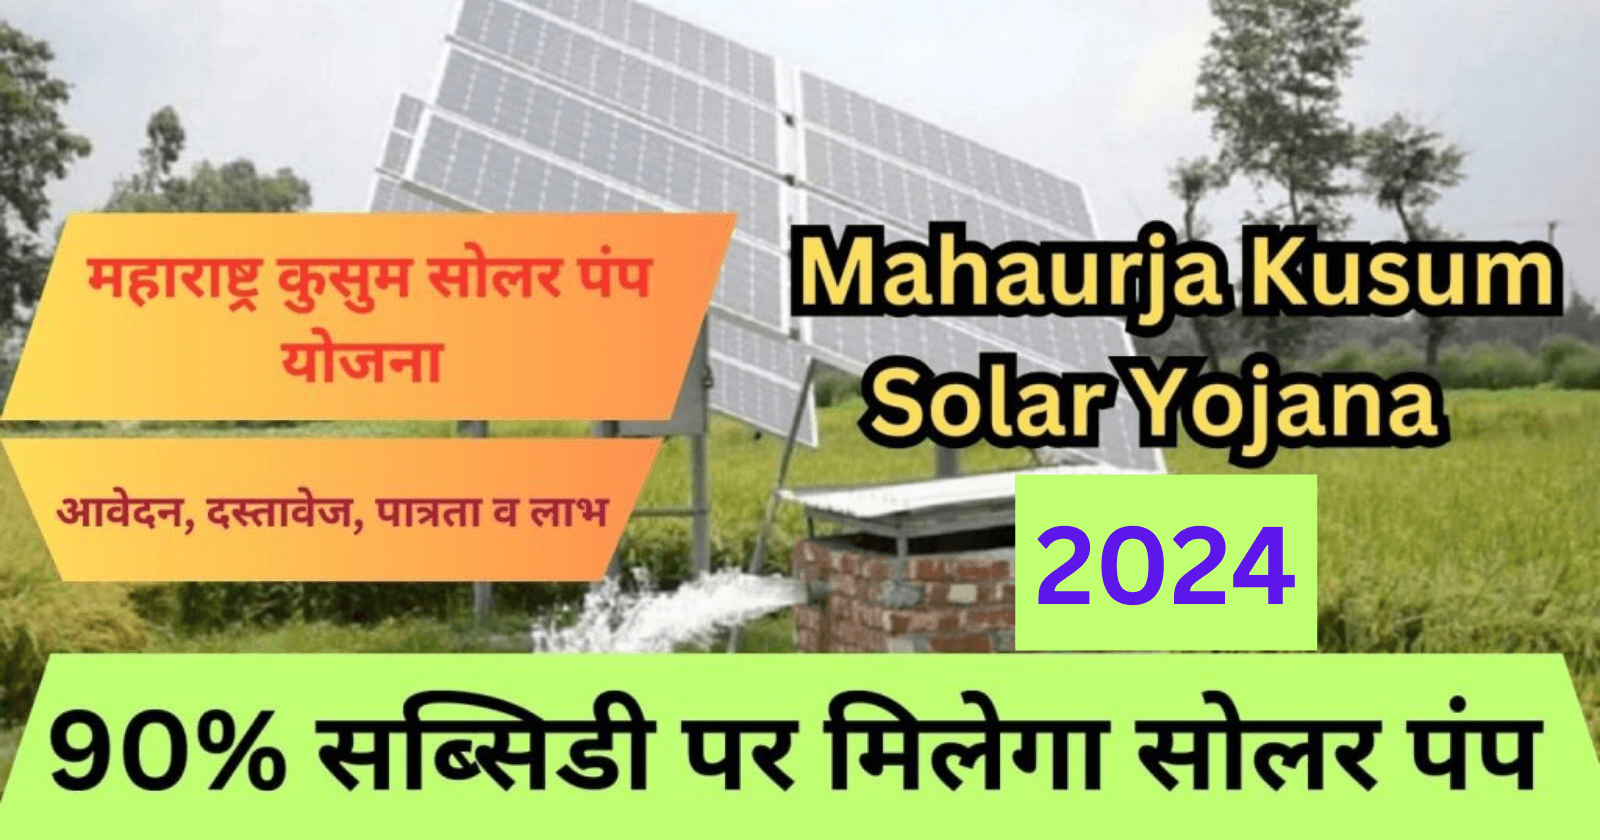 Mahaurja Kusum Solar Yojana 2024